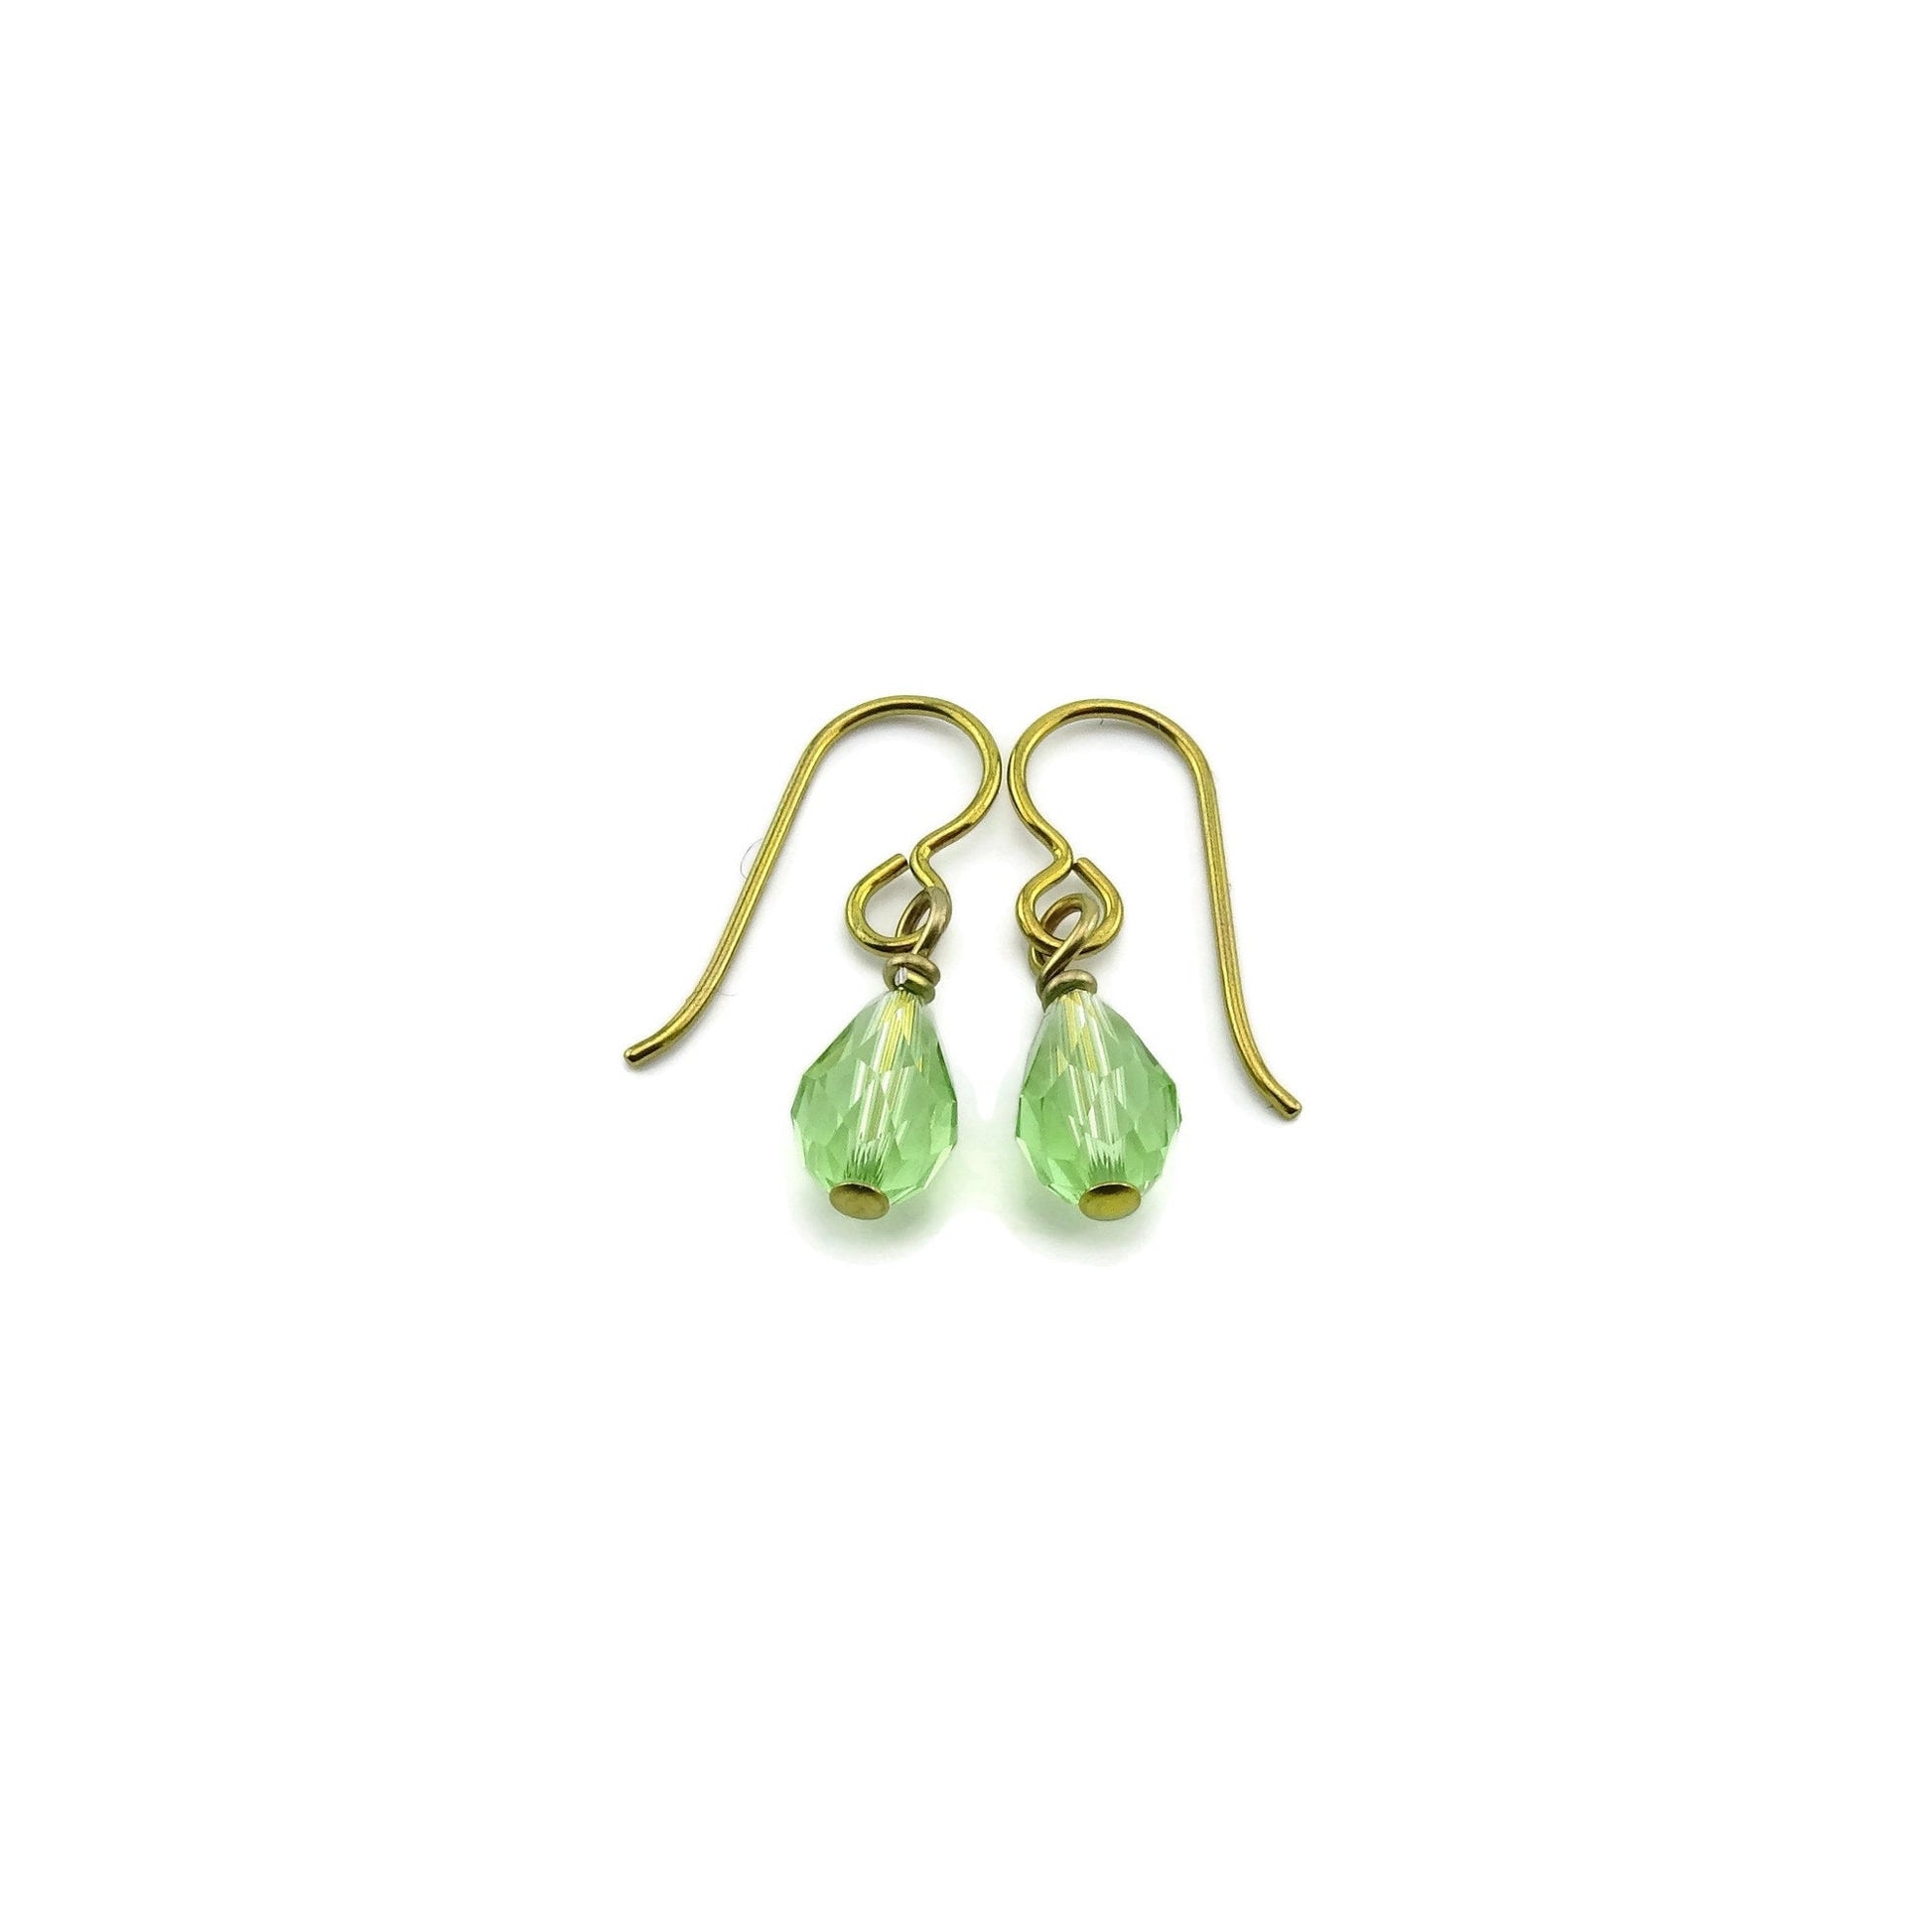 Peridot Teardrop Gold Niobium Earring, Green Crystal Swarovski Drop, Hypoallergenic Earrings for Sensitive Ears, Nickel Free Jewelry